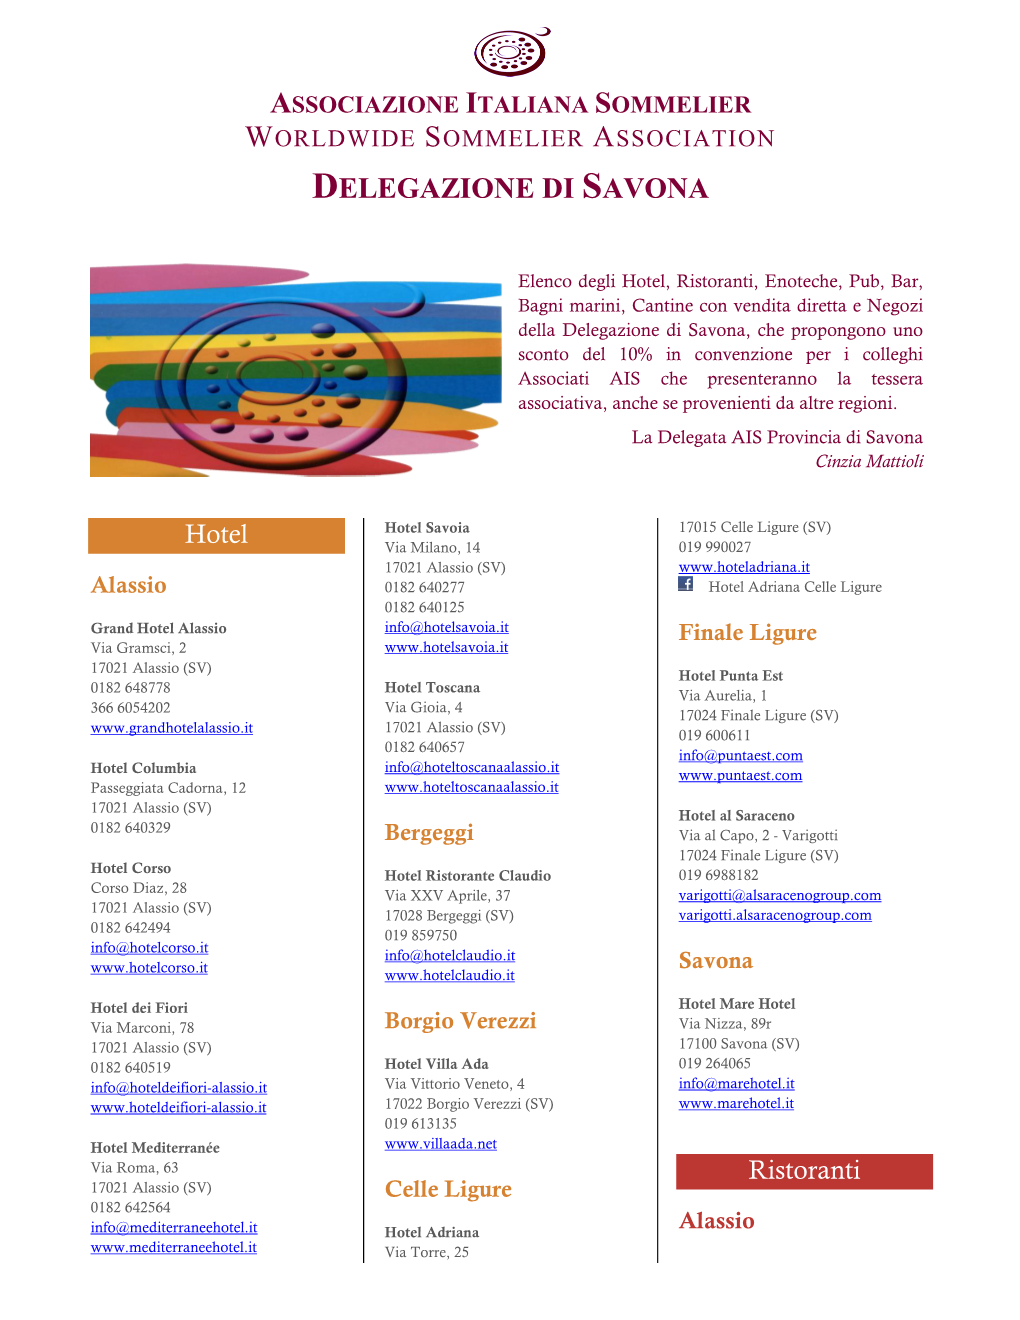 Delegazione Di Savona